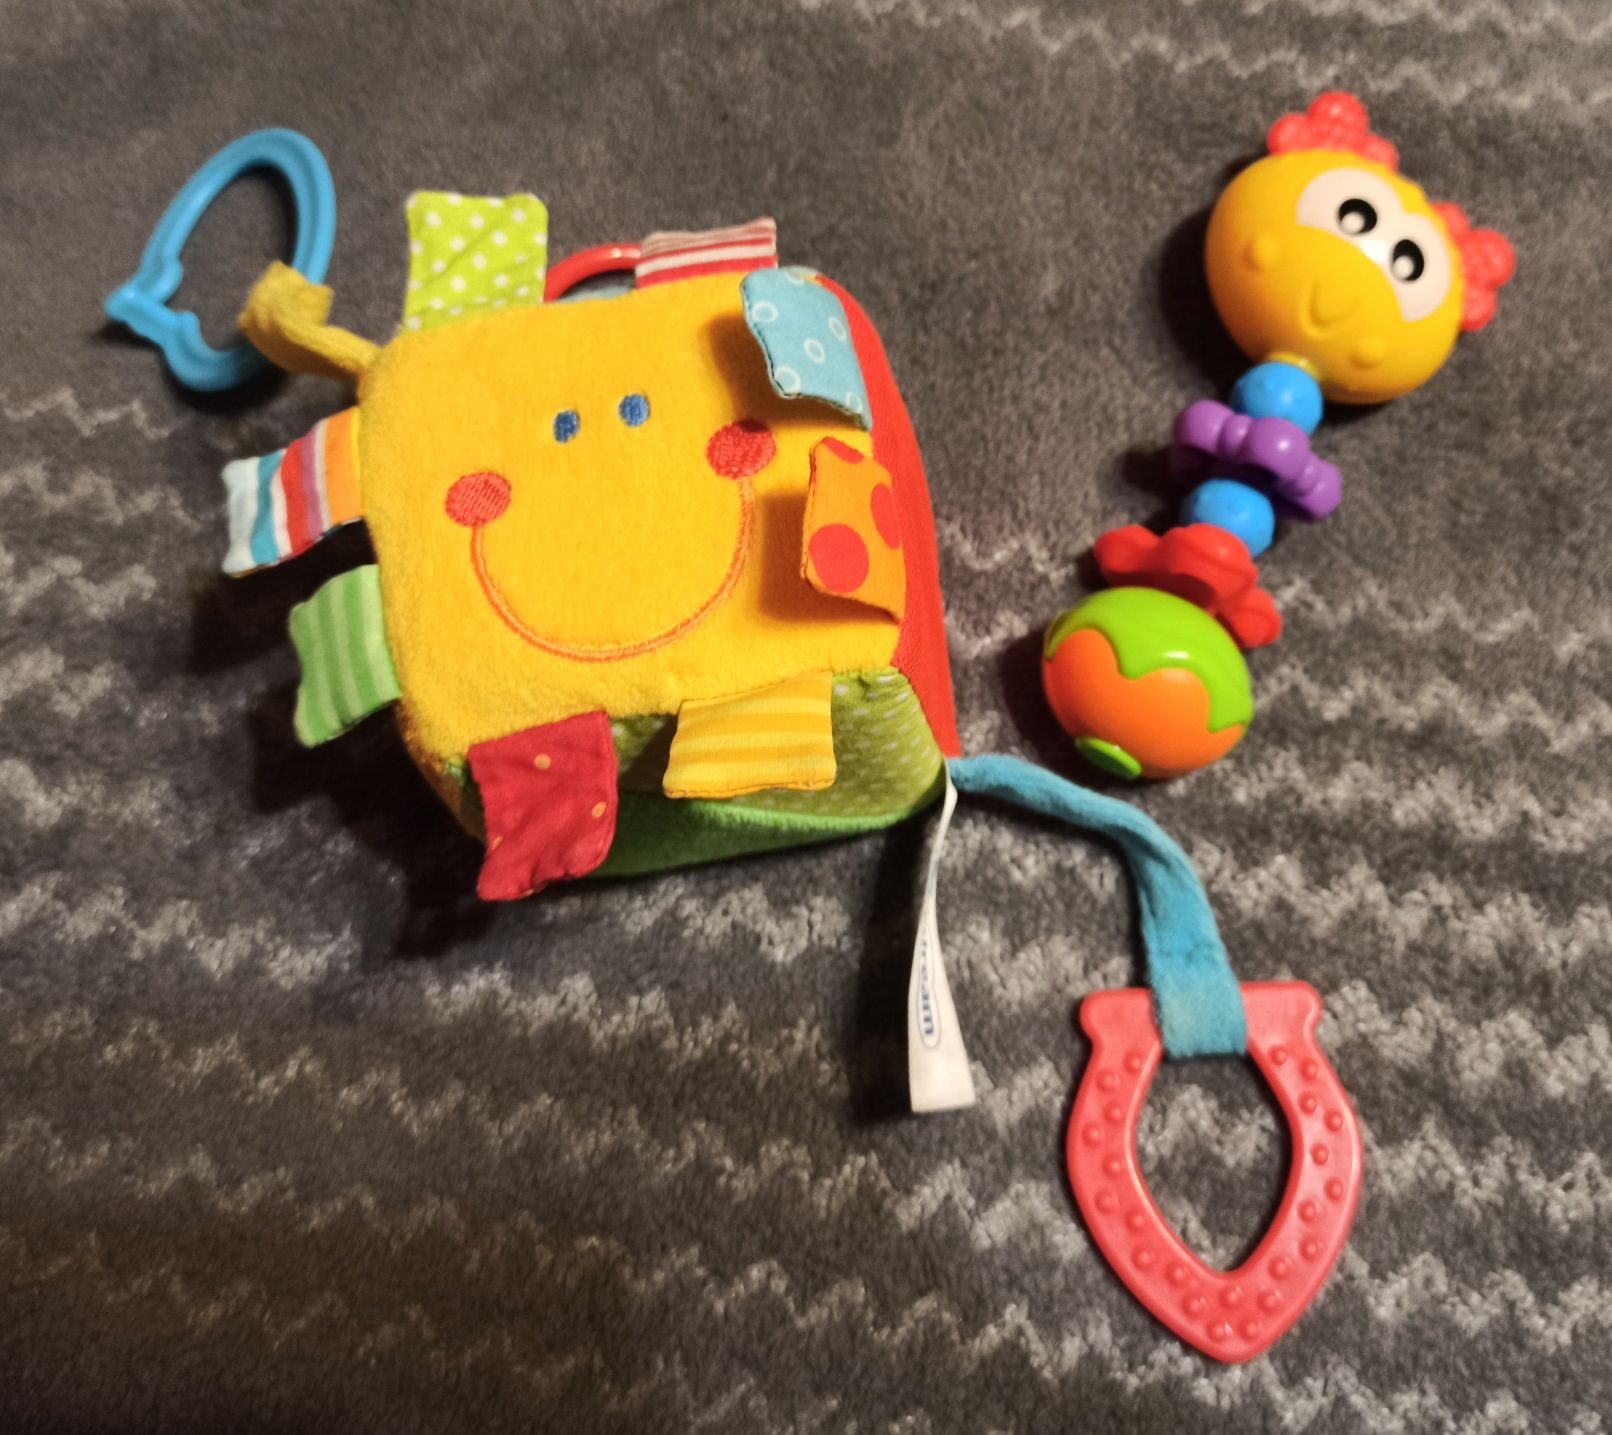 Miękkie zabawki dla niemowlaka kolorowa kostka sensoryczna i grzechotk